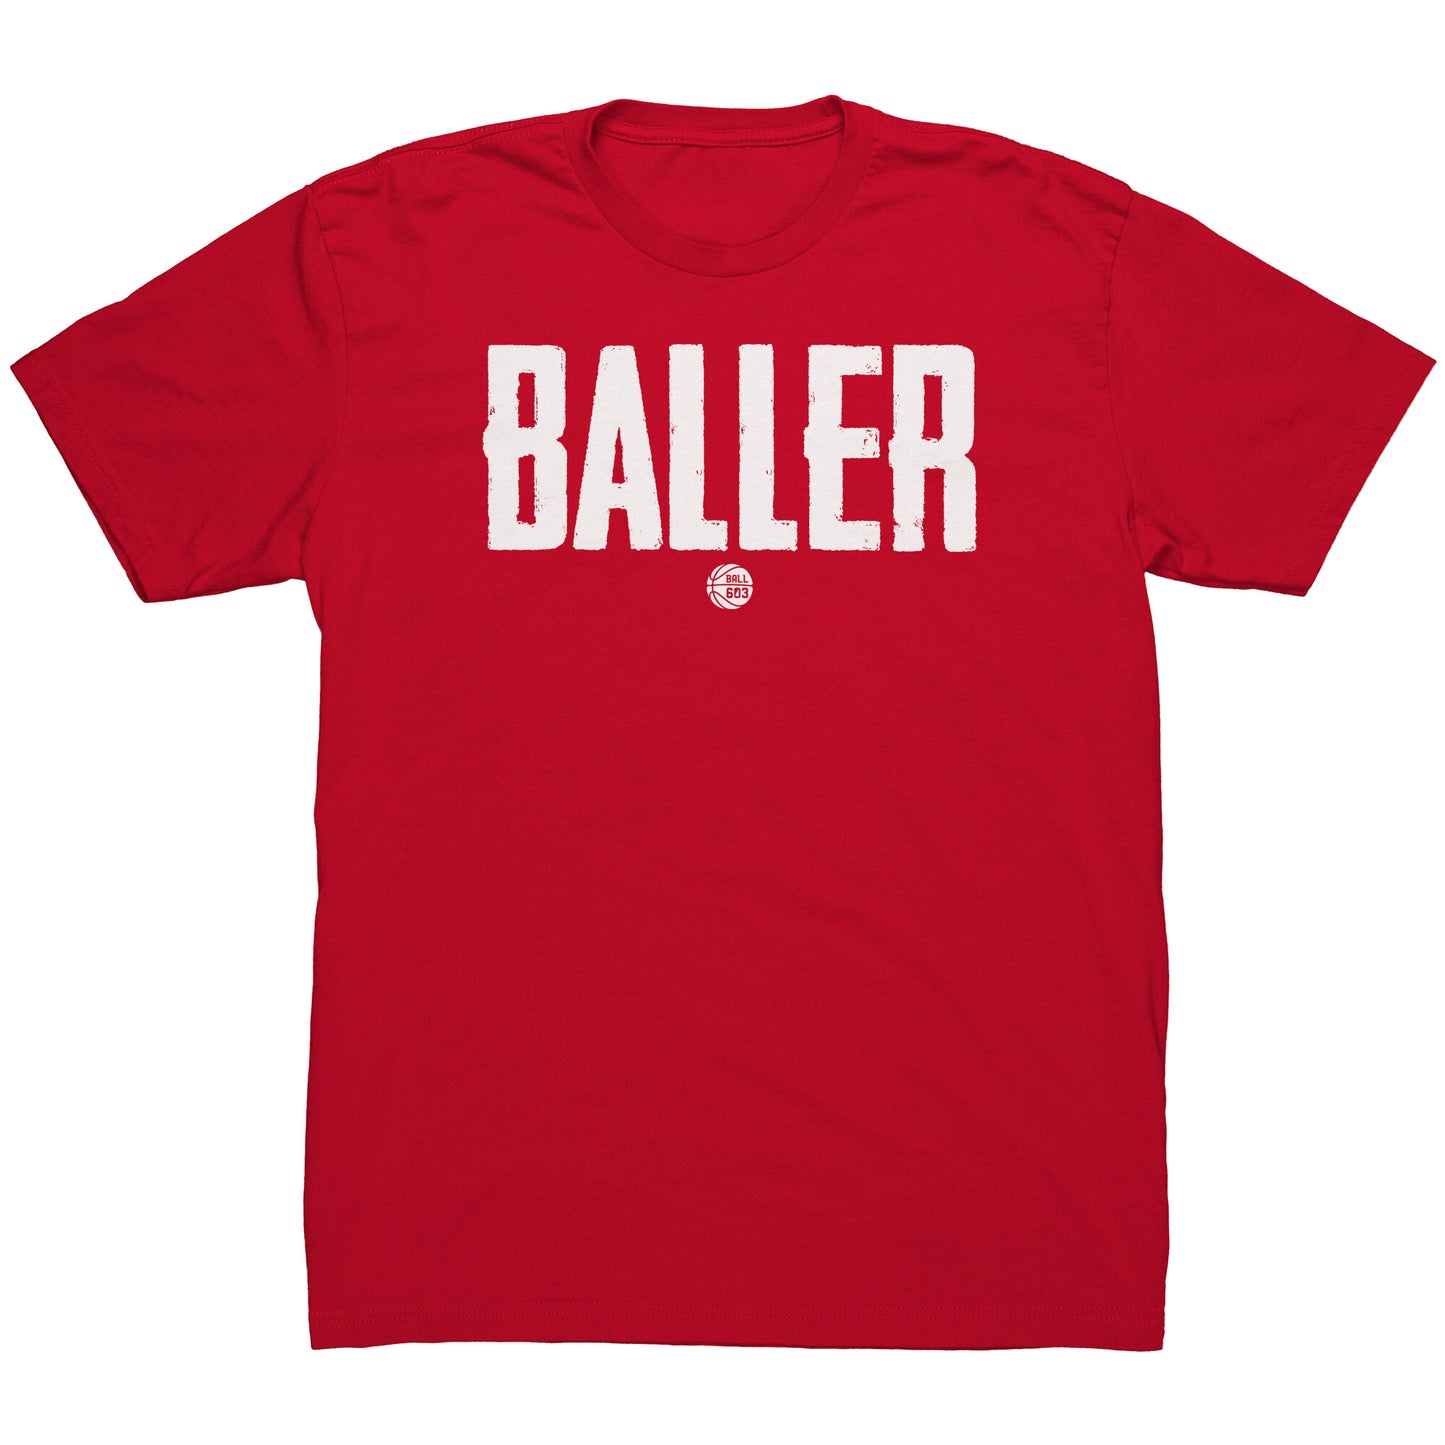 Baller T-Shirt (Men's Cut)